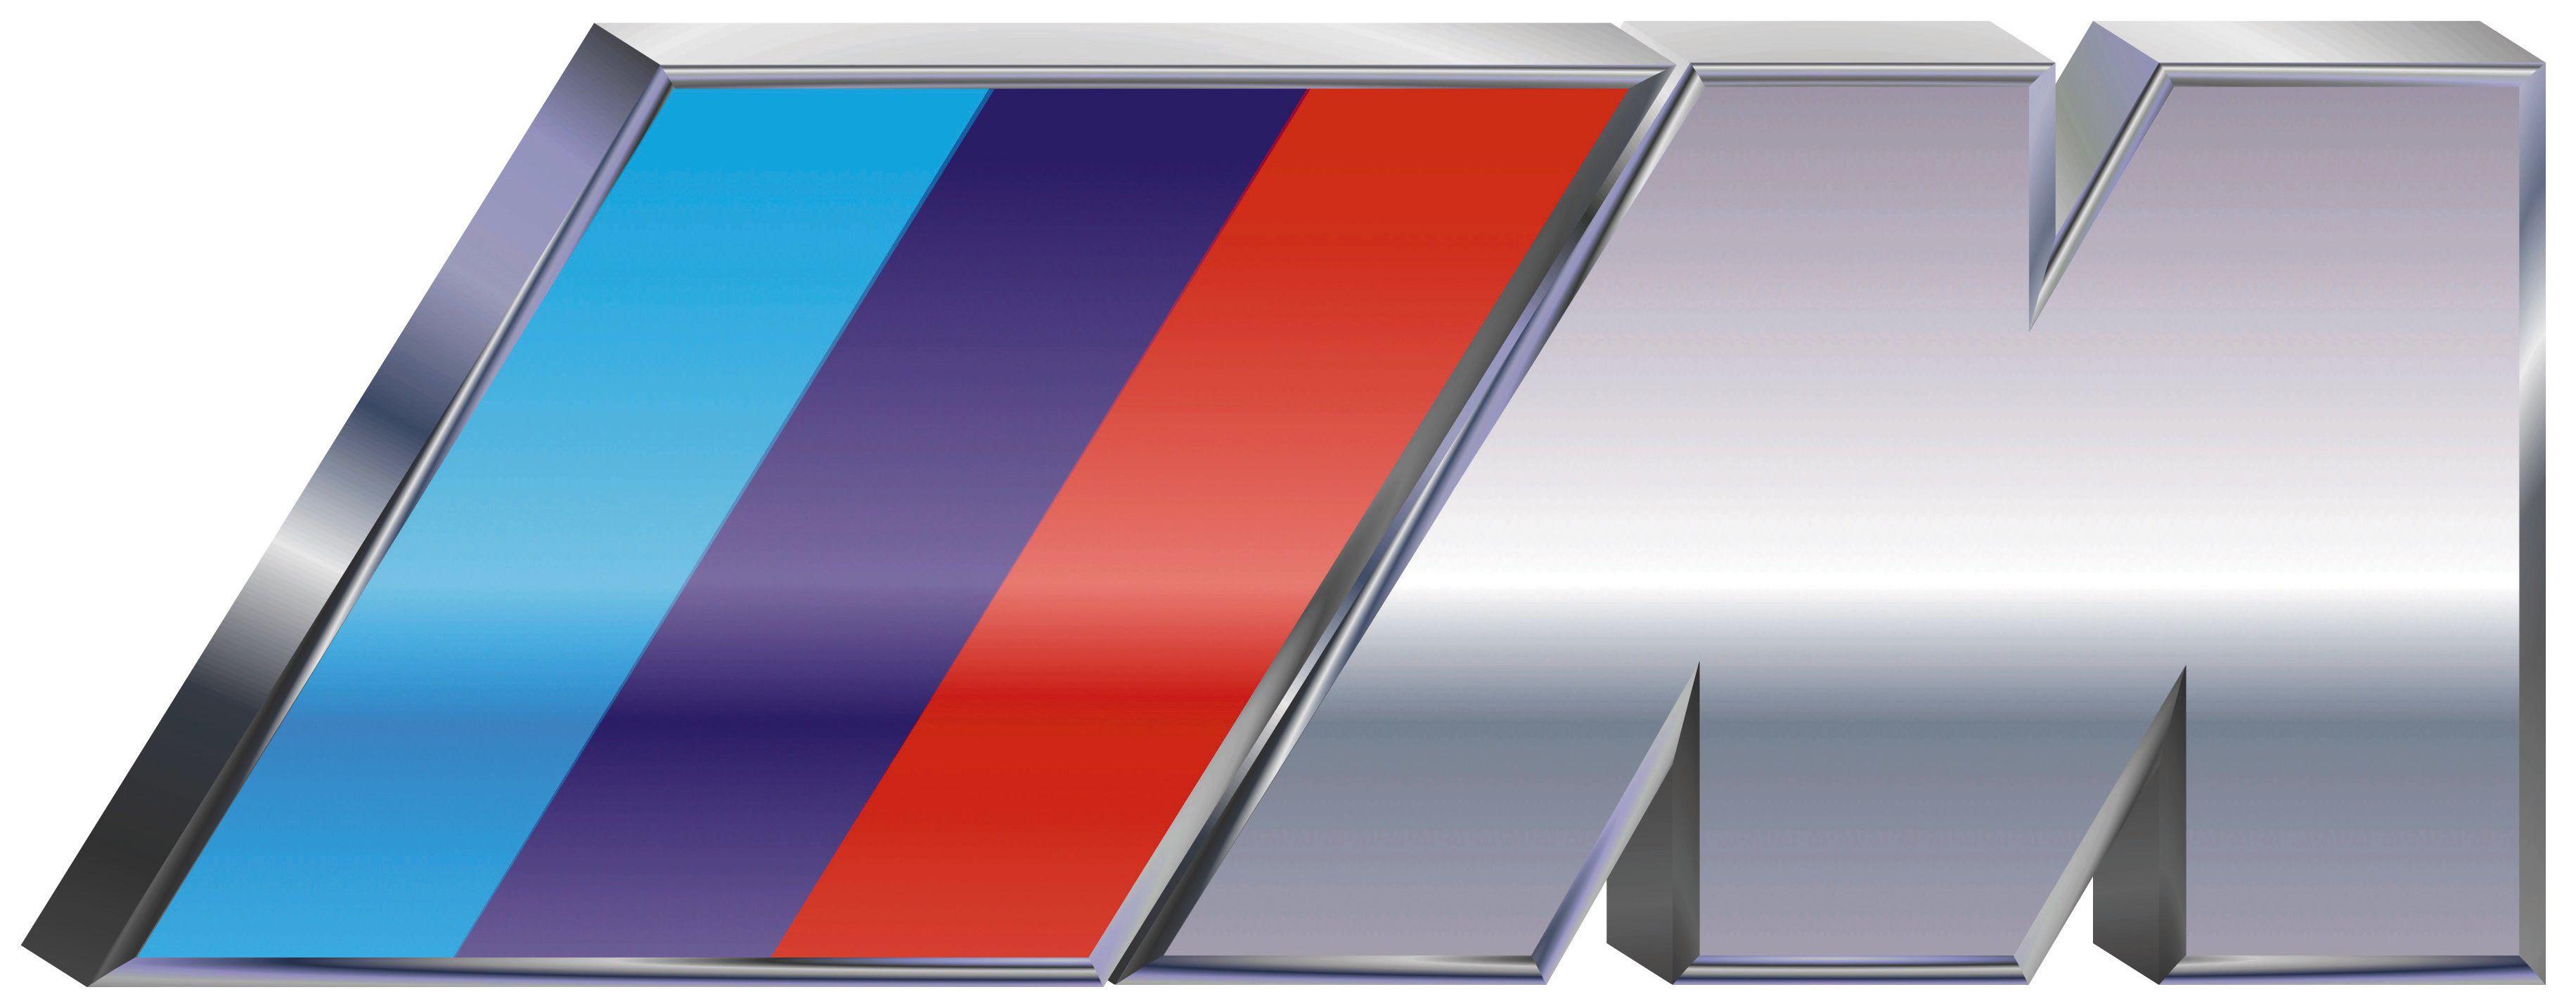 BMW M Sport Logo - How to spot a genuine 'M' Series BMW